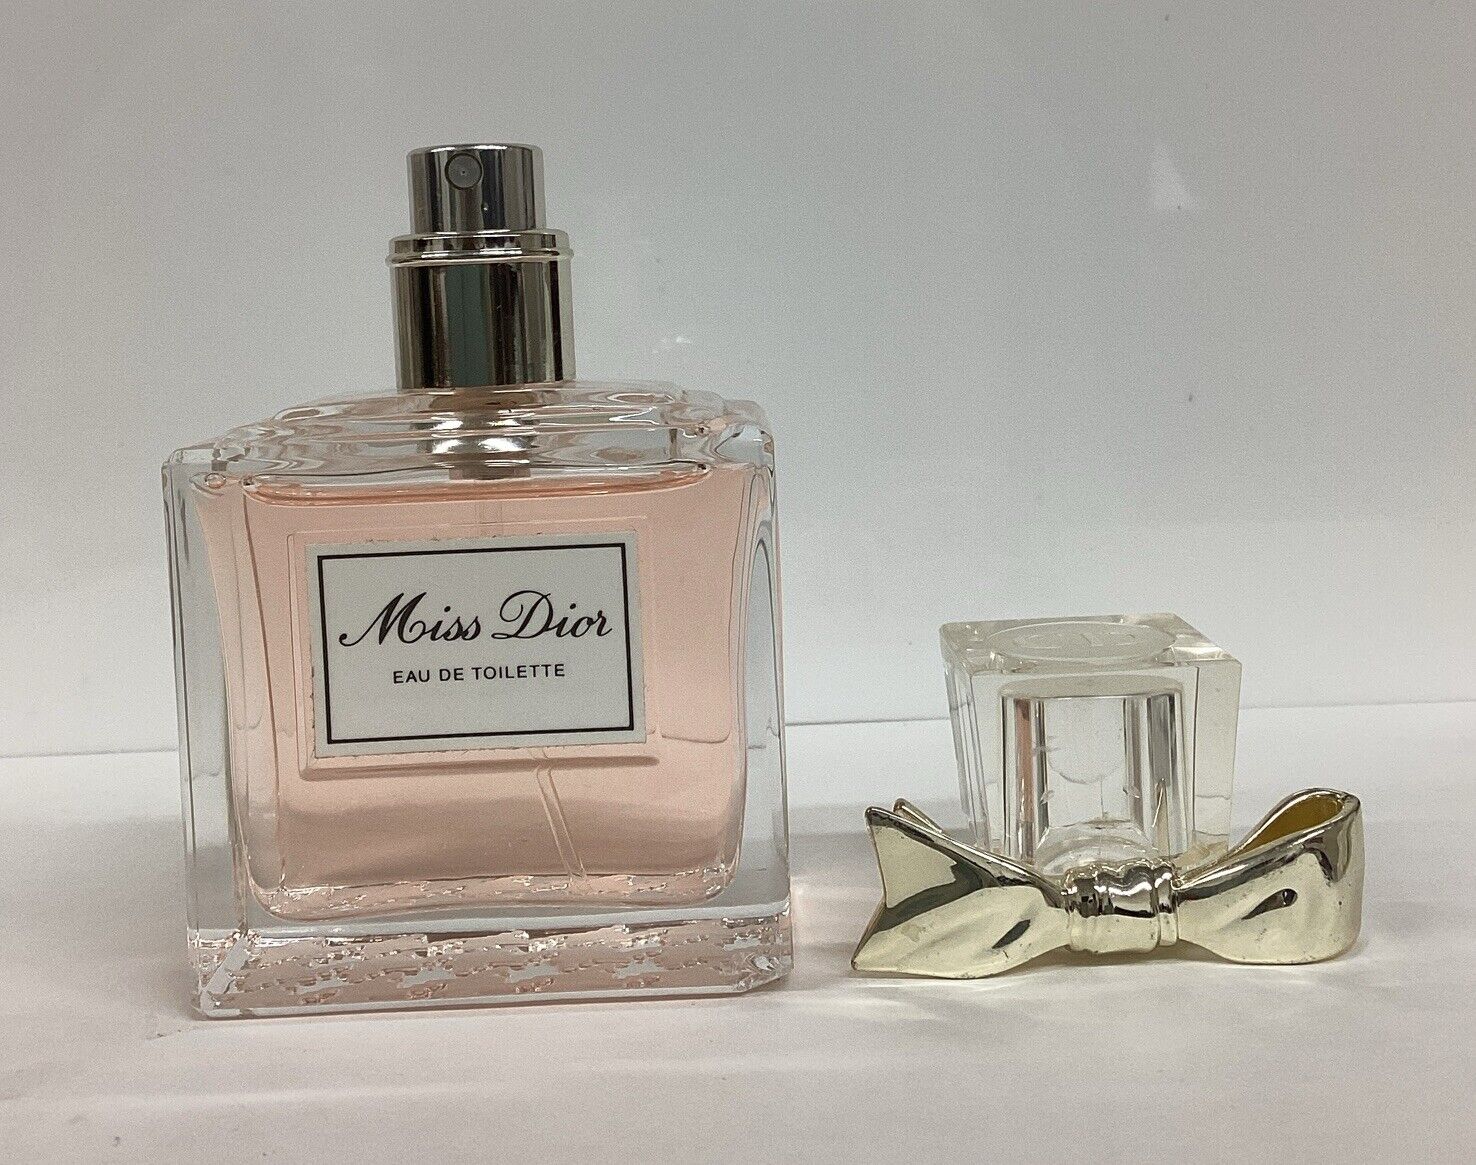 Miss Dior By Christian Dior Eau De Toilette 1.7oz As Pictured *VINTAGE 2014*Read